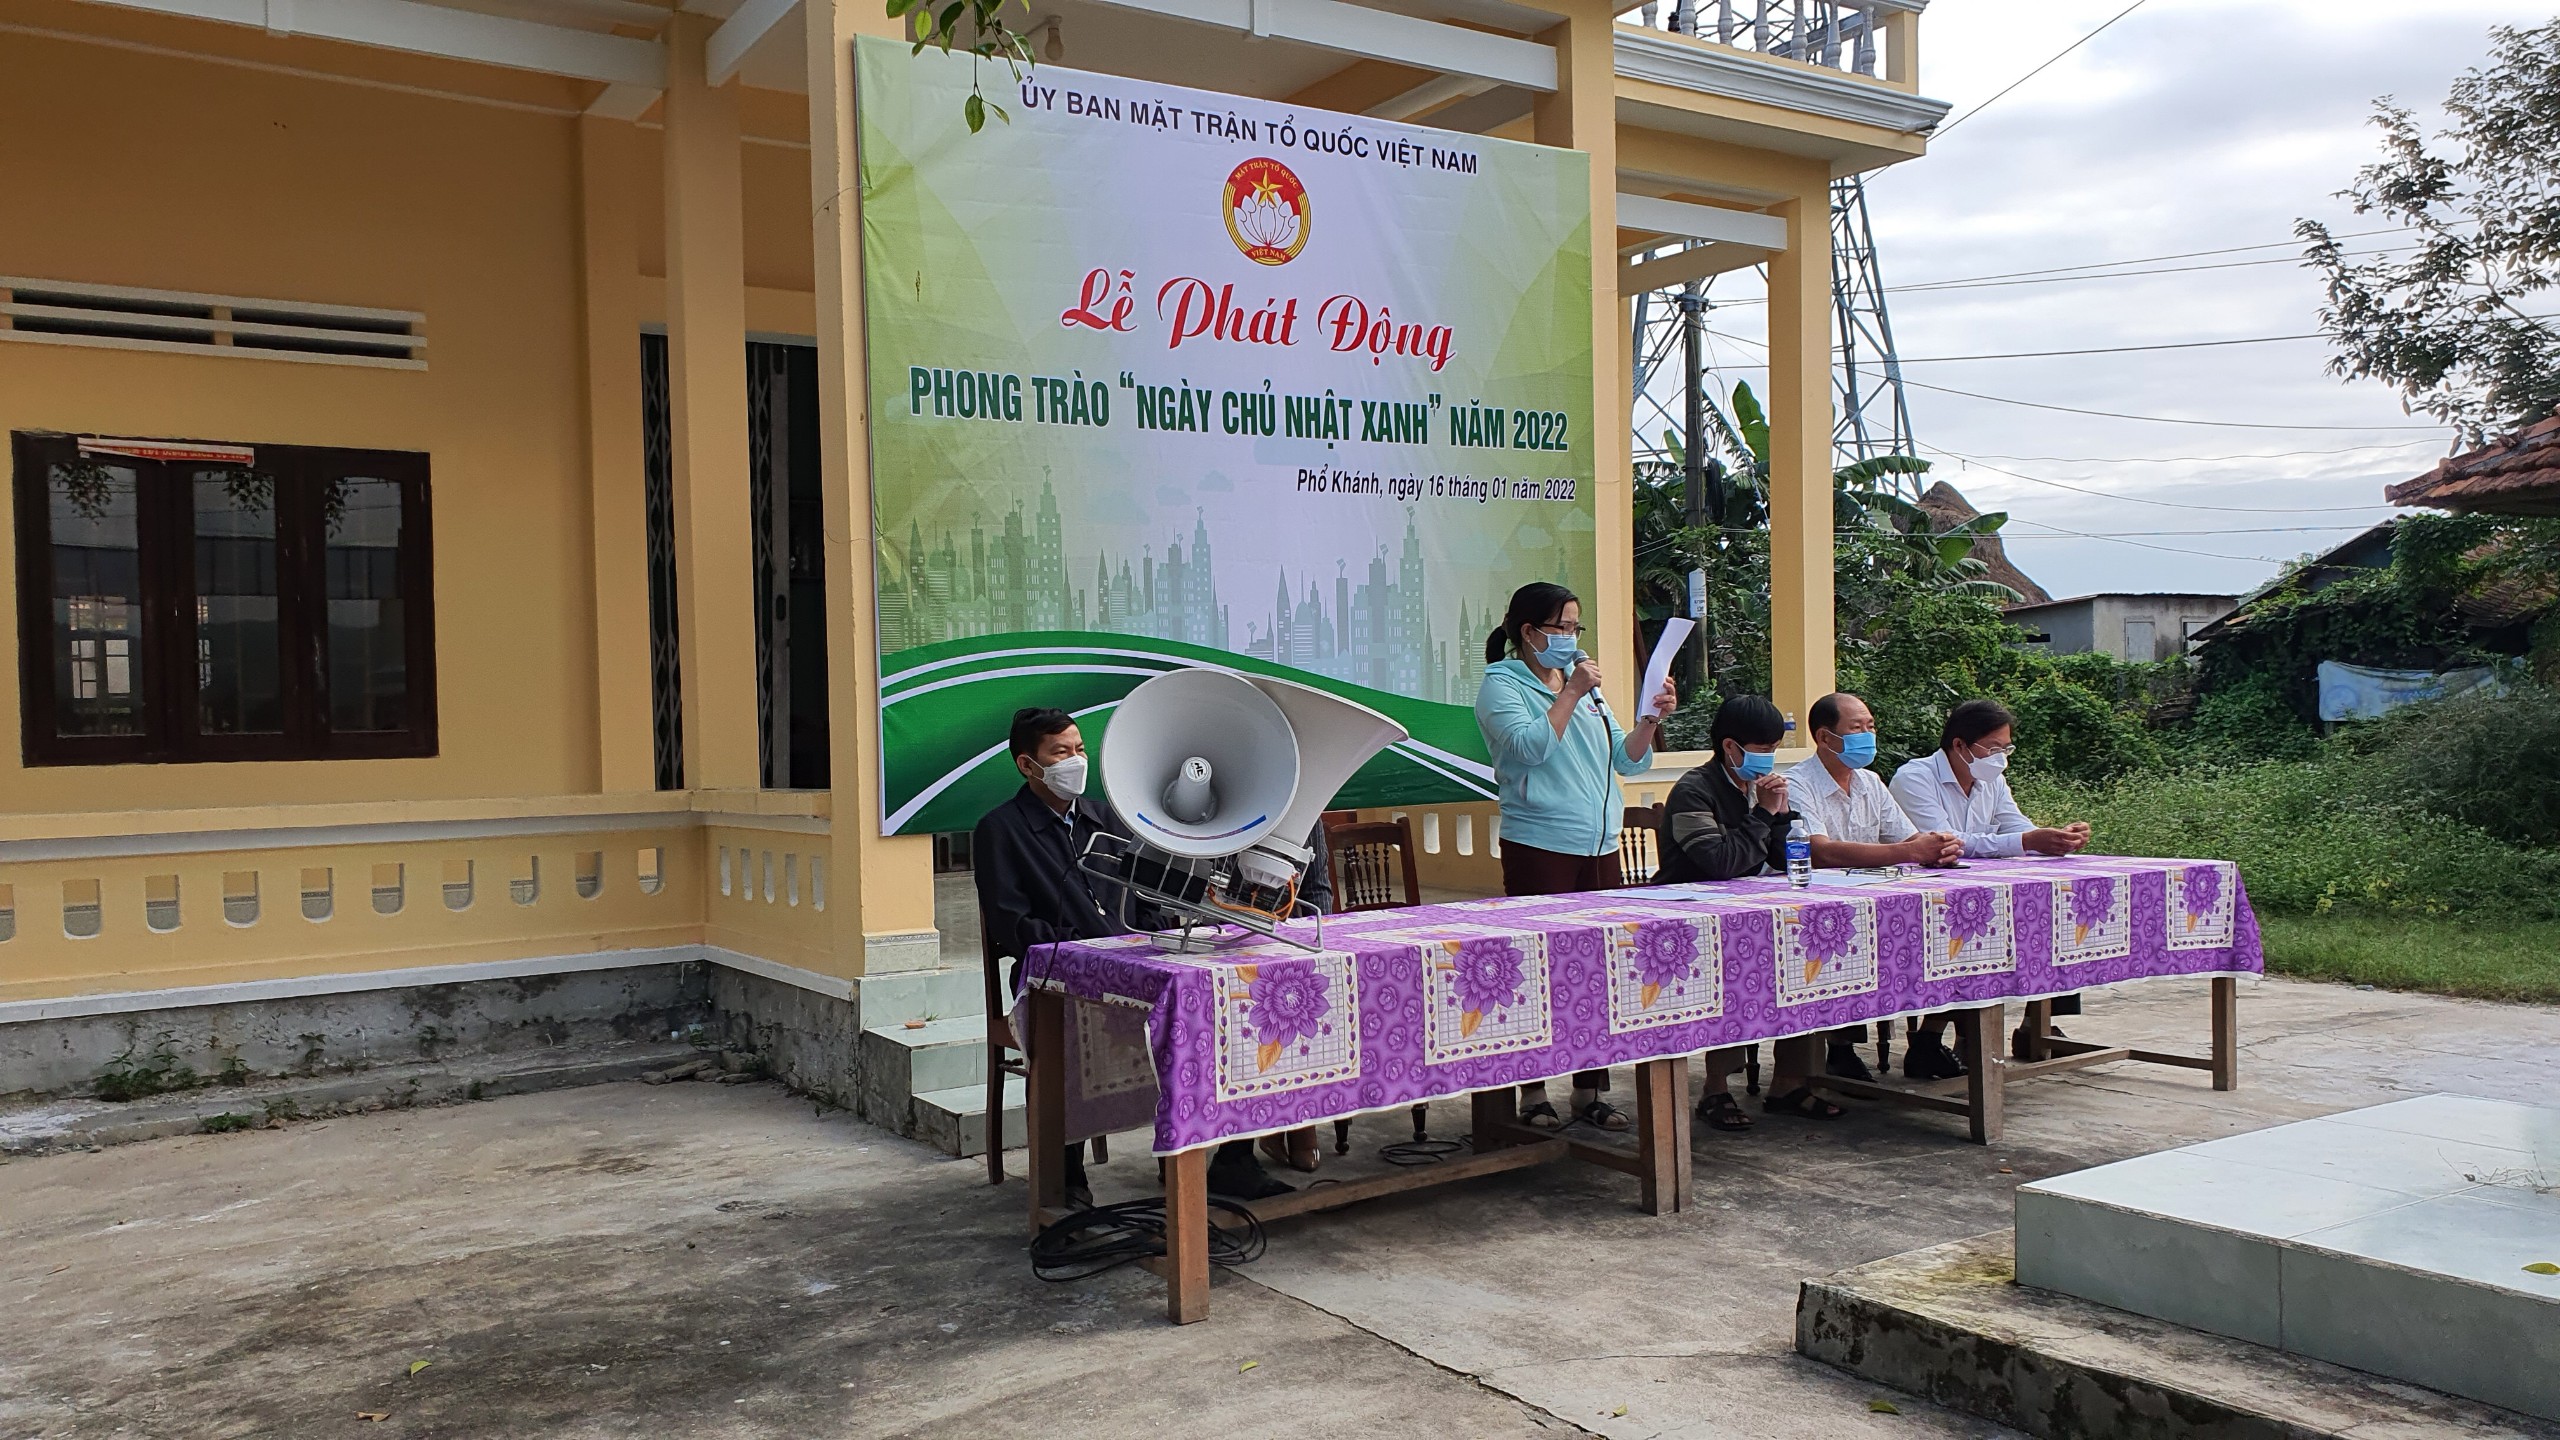 Xã Phổ Khánh tổ chức Lễ phát động phong trào “Ngày Chủ nhật xanh” năm 2022